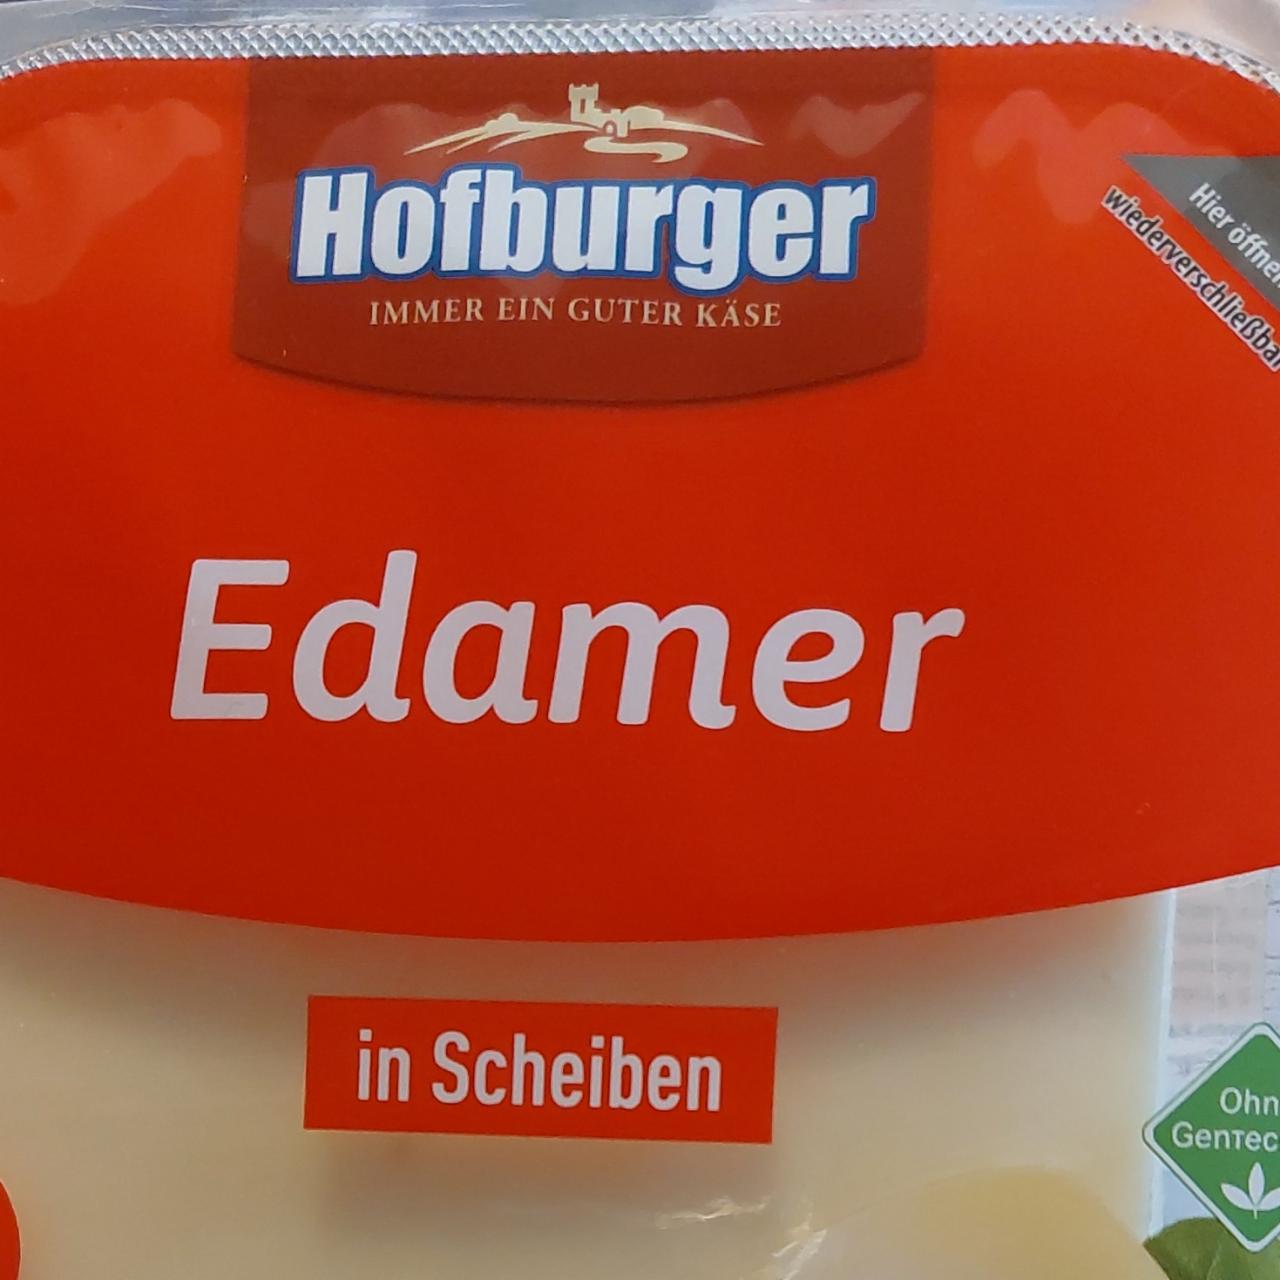 Фото - Edawer 40% Hofburger